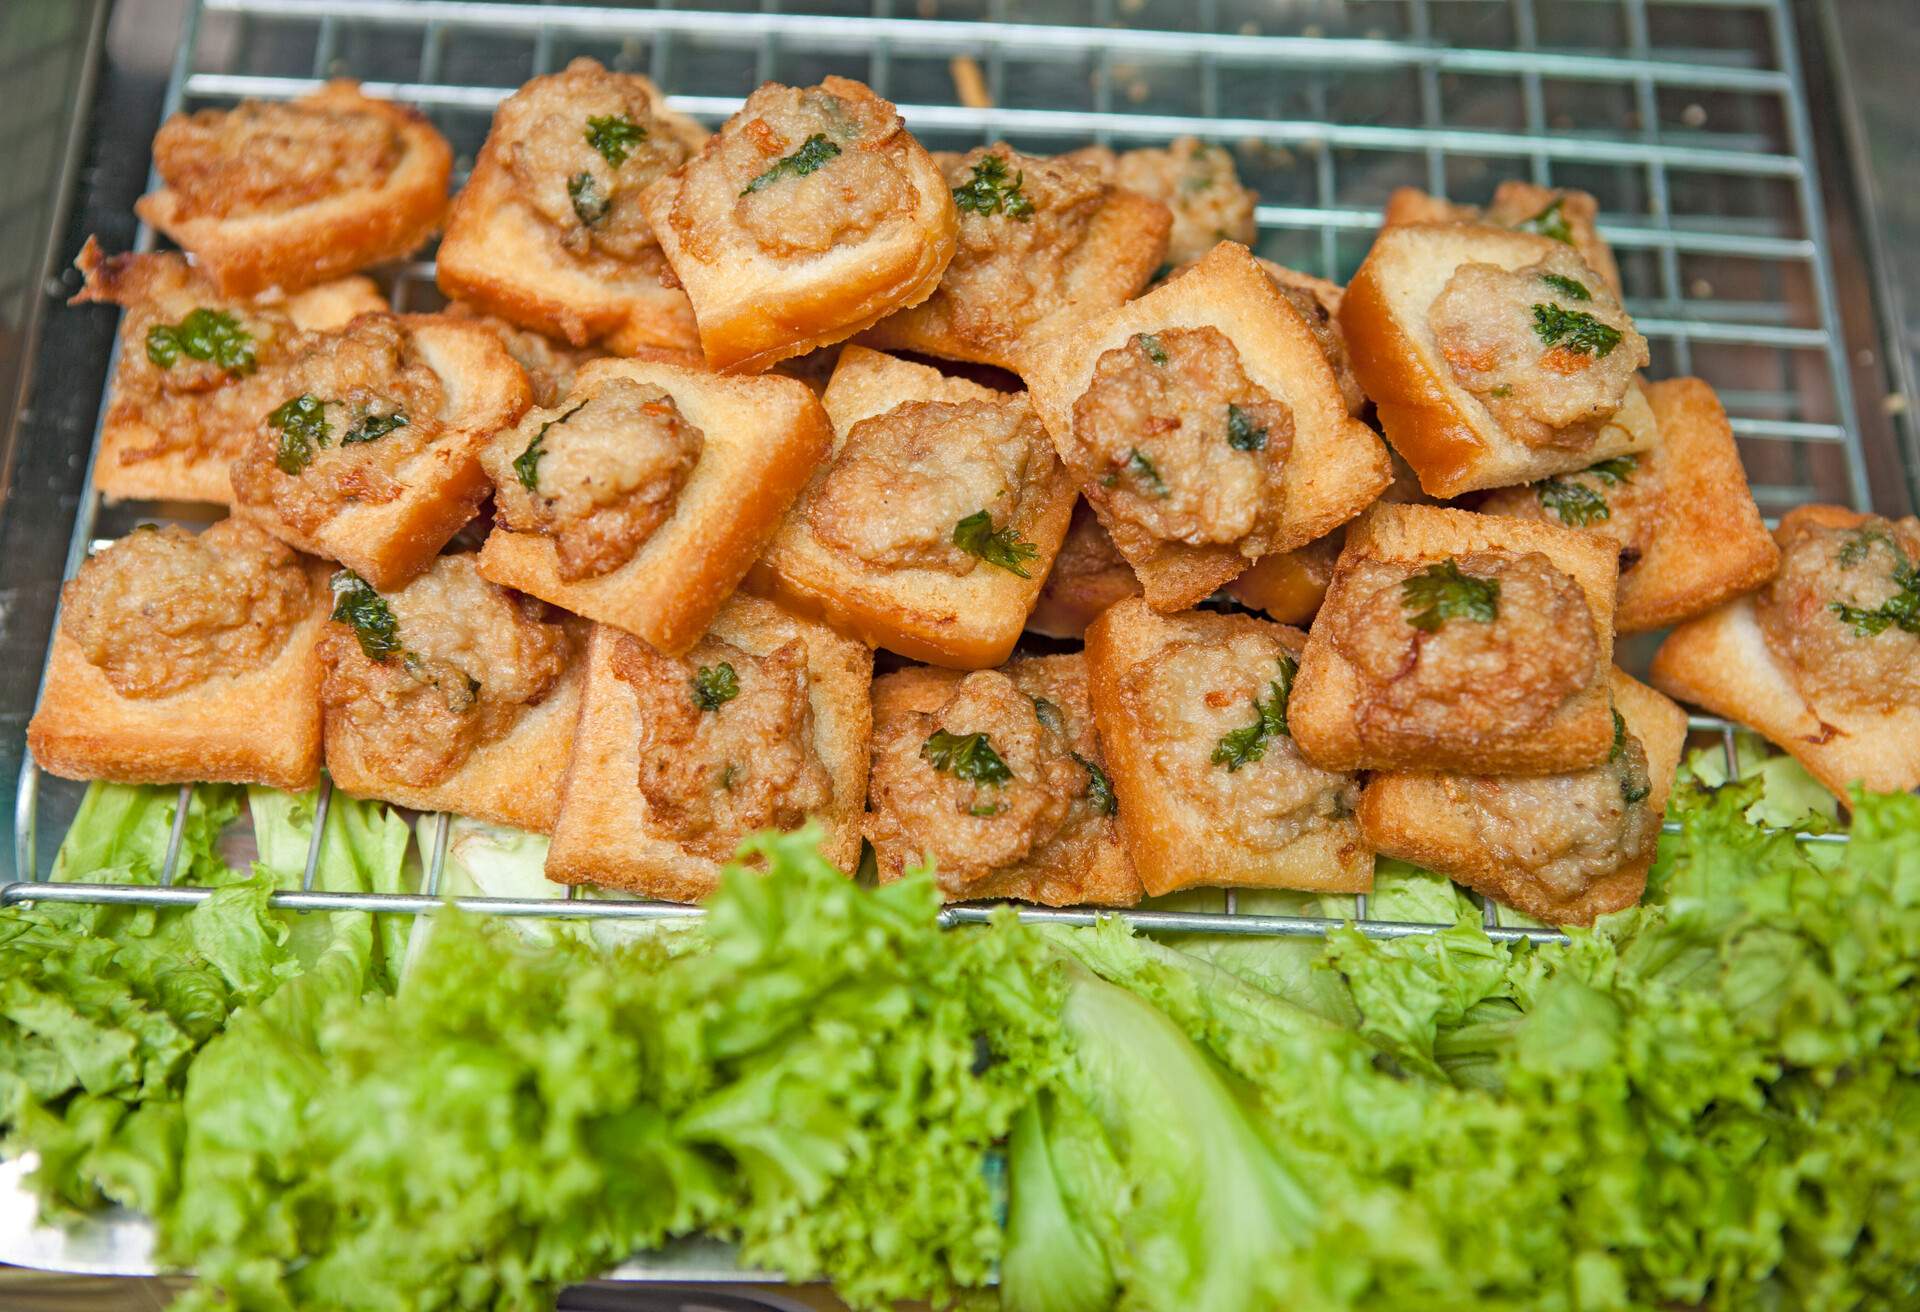 Thai Street Food - mini toasts with meat